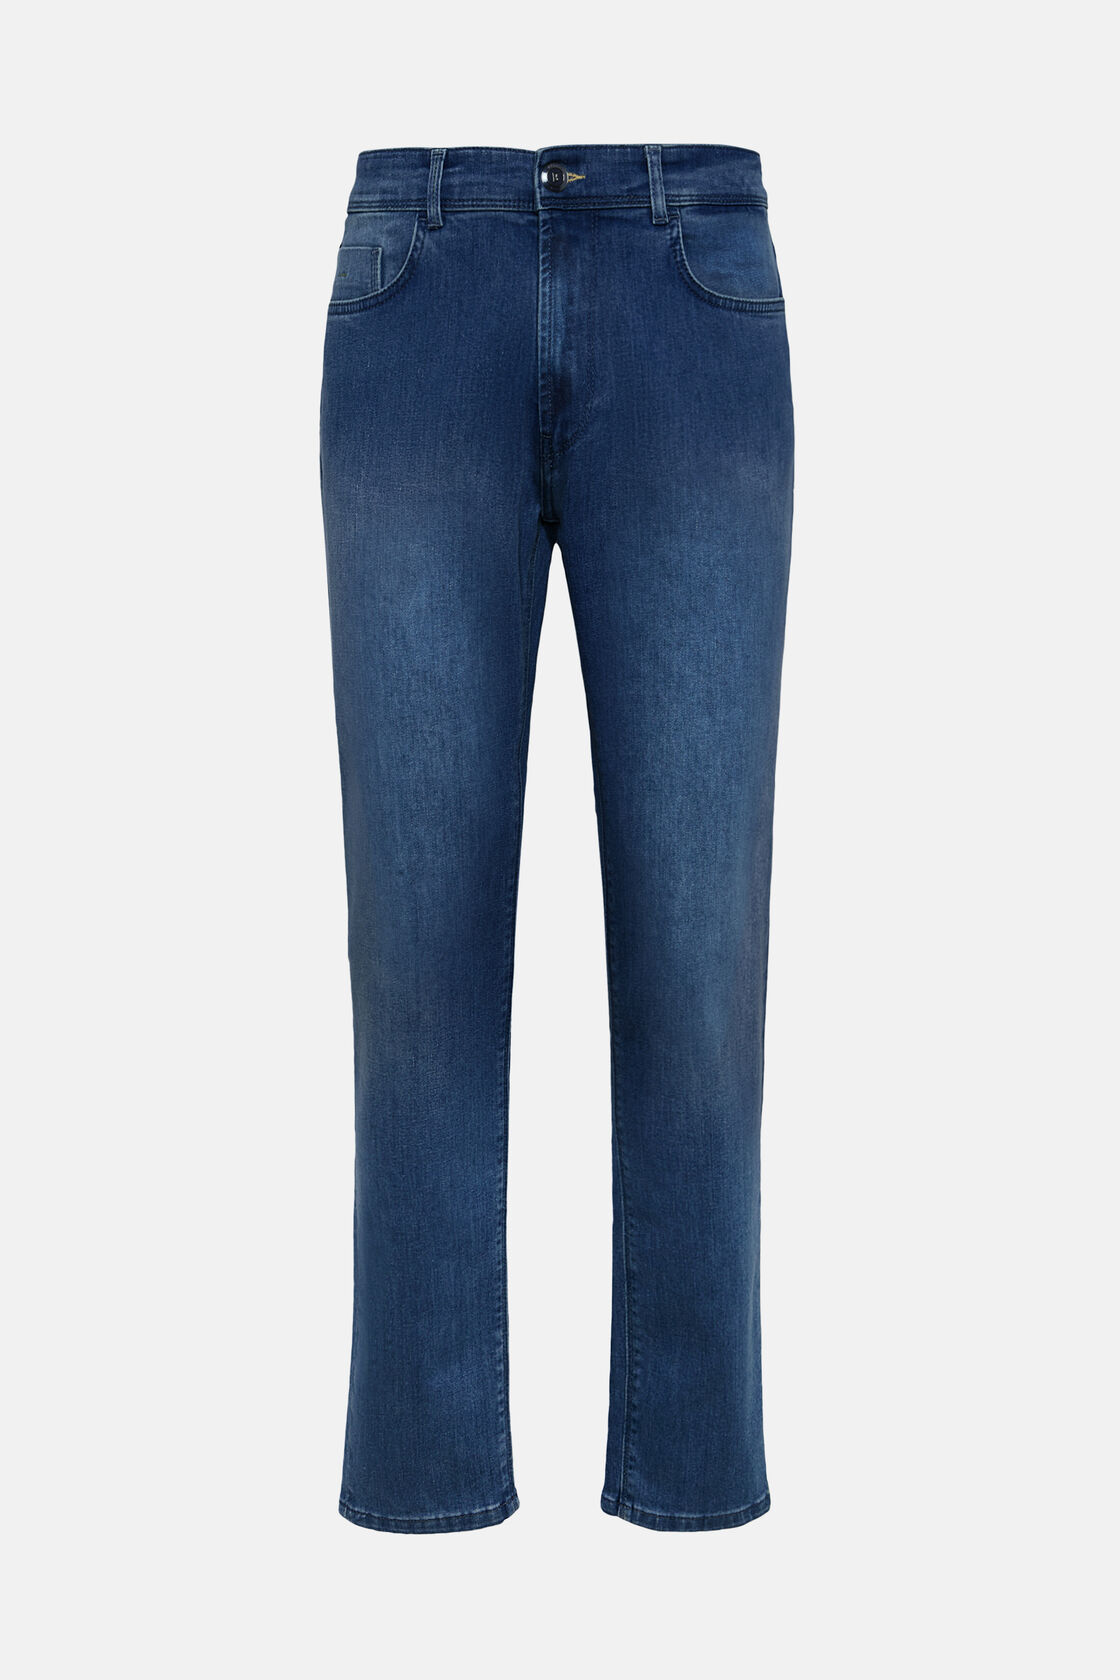 Mittelblaue Jeans Aus Elastischem Denim, Indigo, hi-res